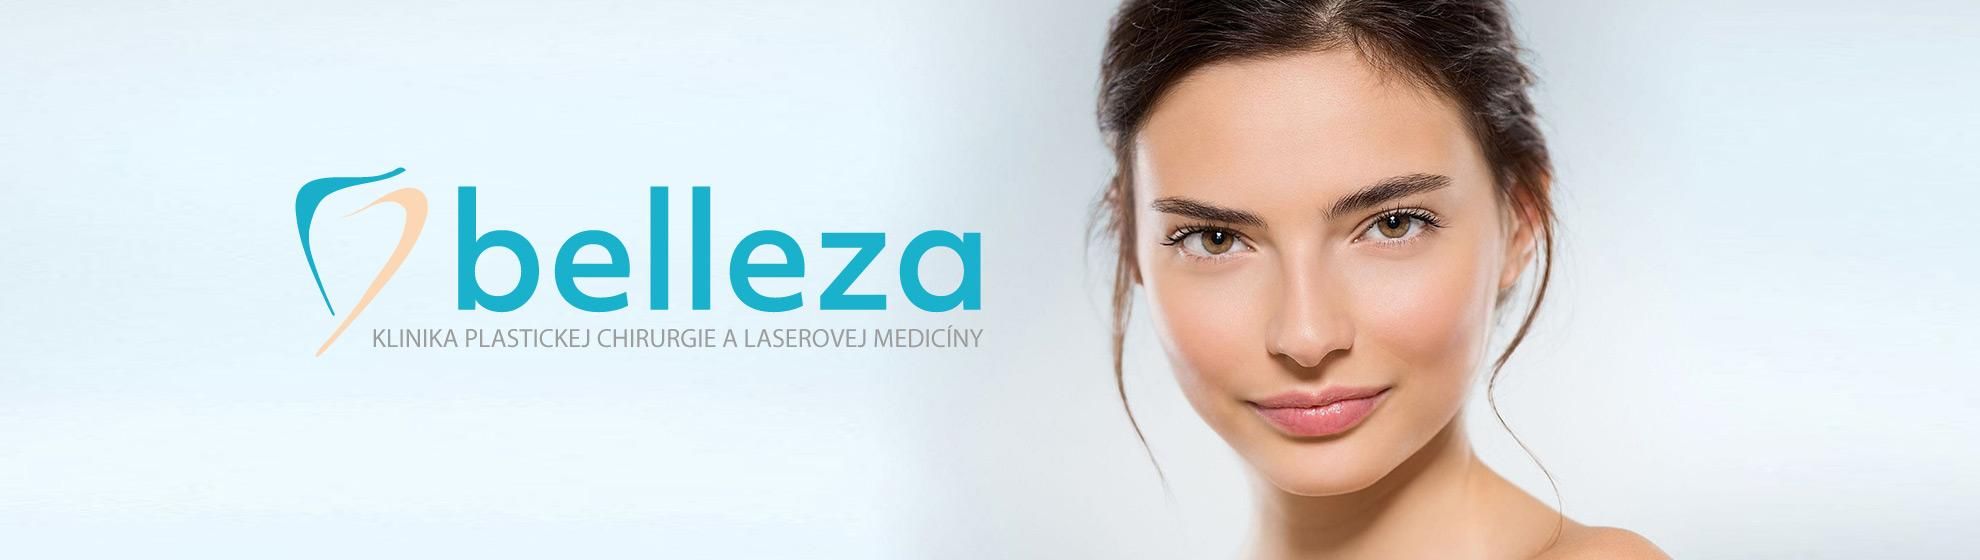 BELLEZA - klinika plastickej chirurgie a laserovej medicíny